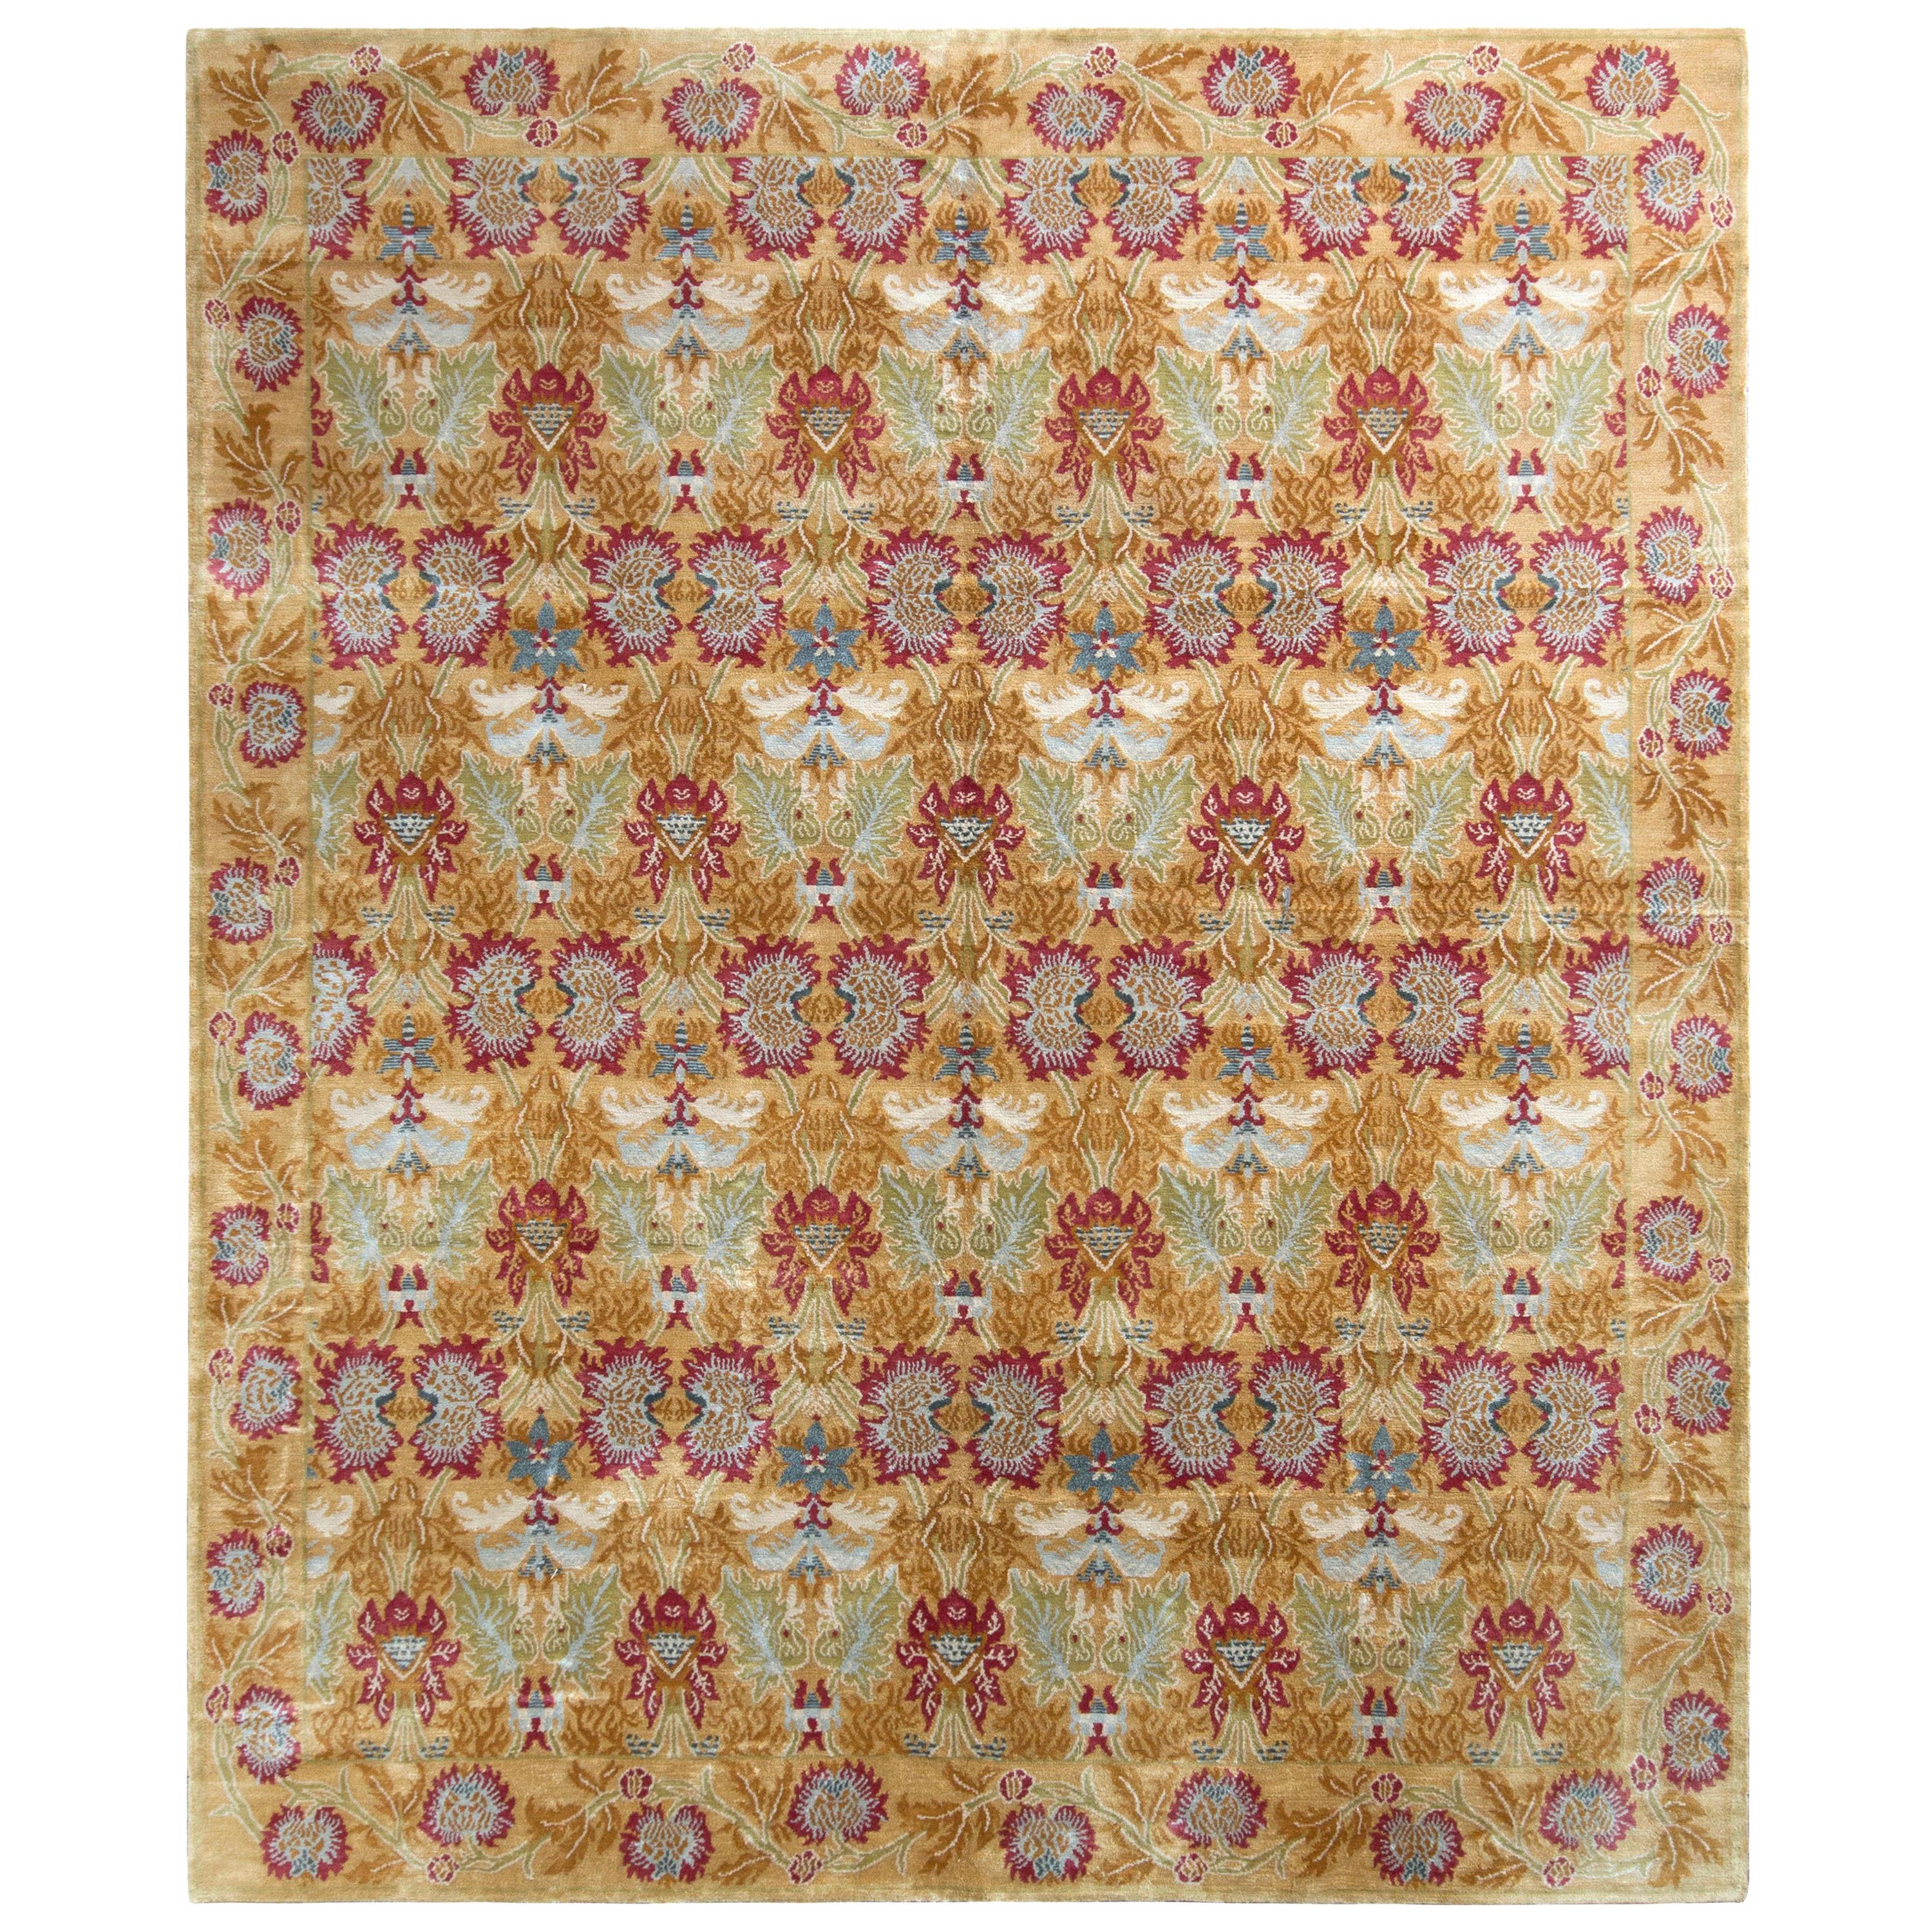 Teppich im europäischen Stil von Teppich & Kilims mit goldenem und rotem Blumenmuster